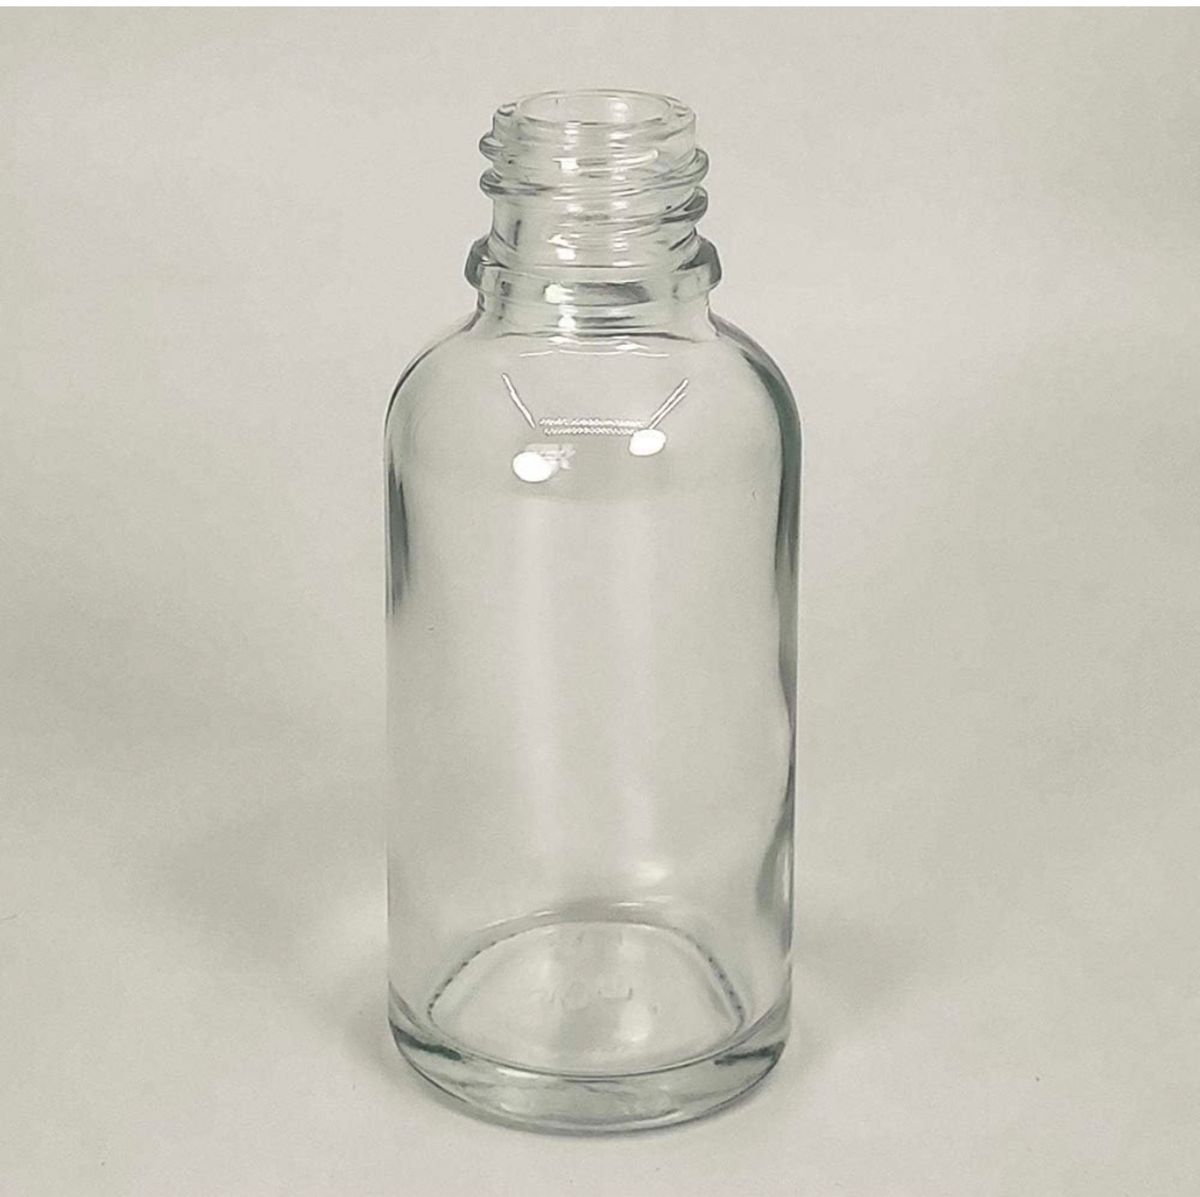 スプレーボトル ガラス製遮光瓶  ミニ噴霧ボトル 携帯用アロマ小分け容器4個入り